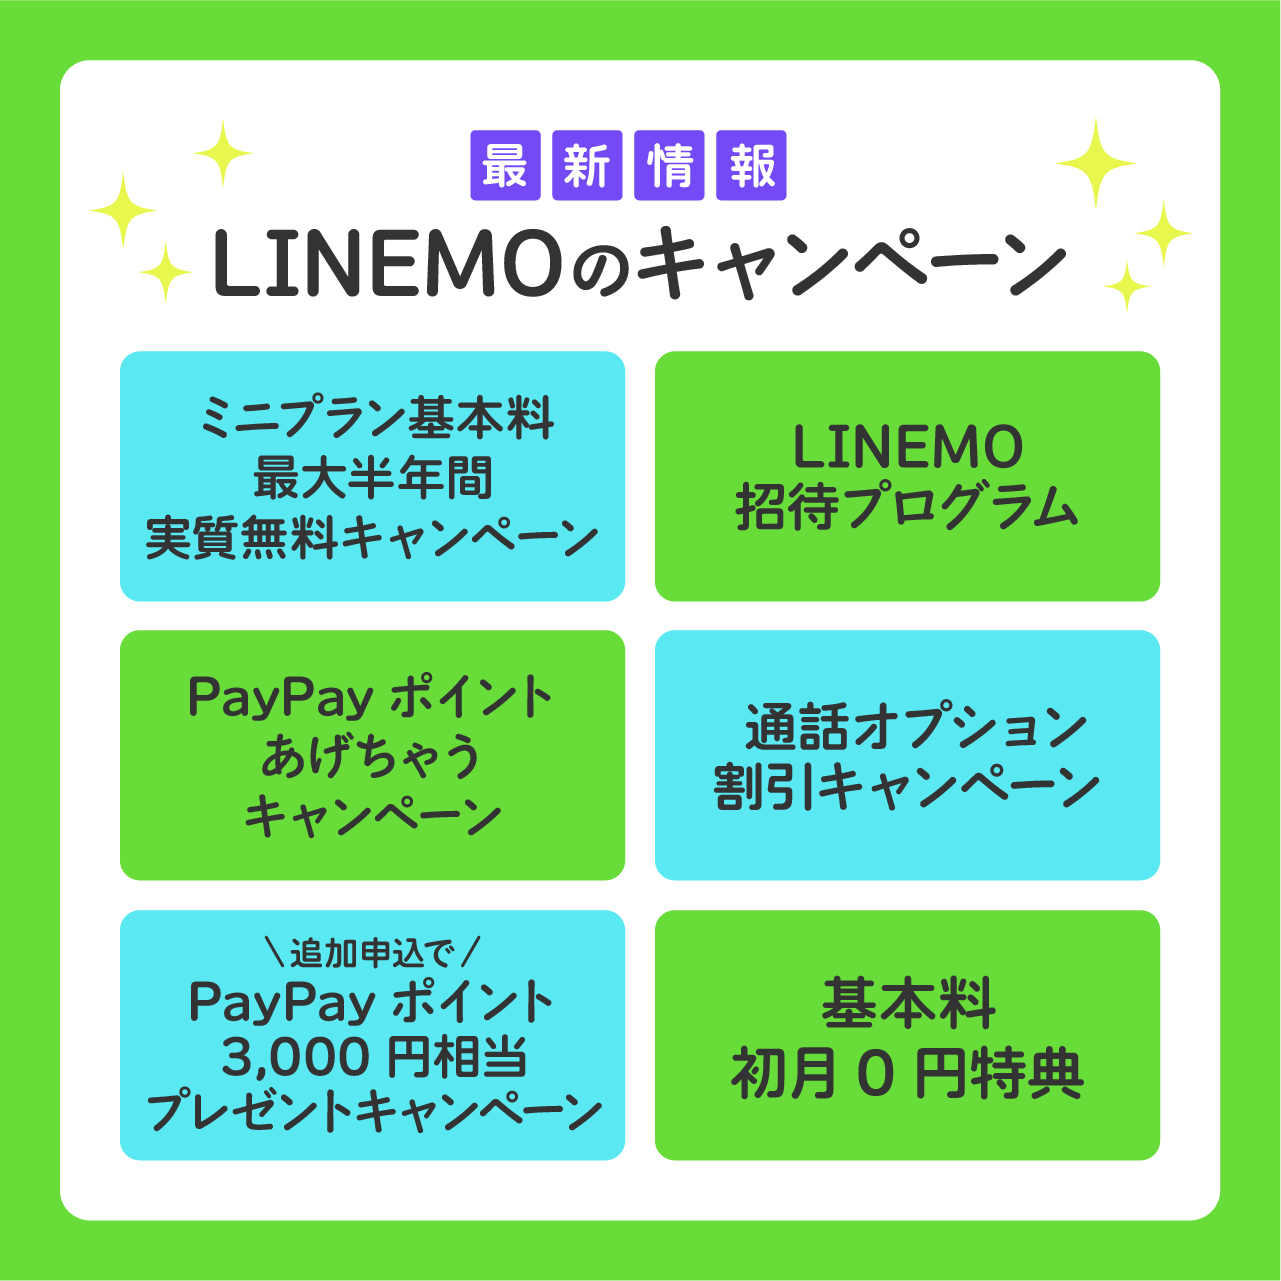 LINEMOのキャンペーン最新情報